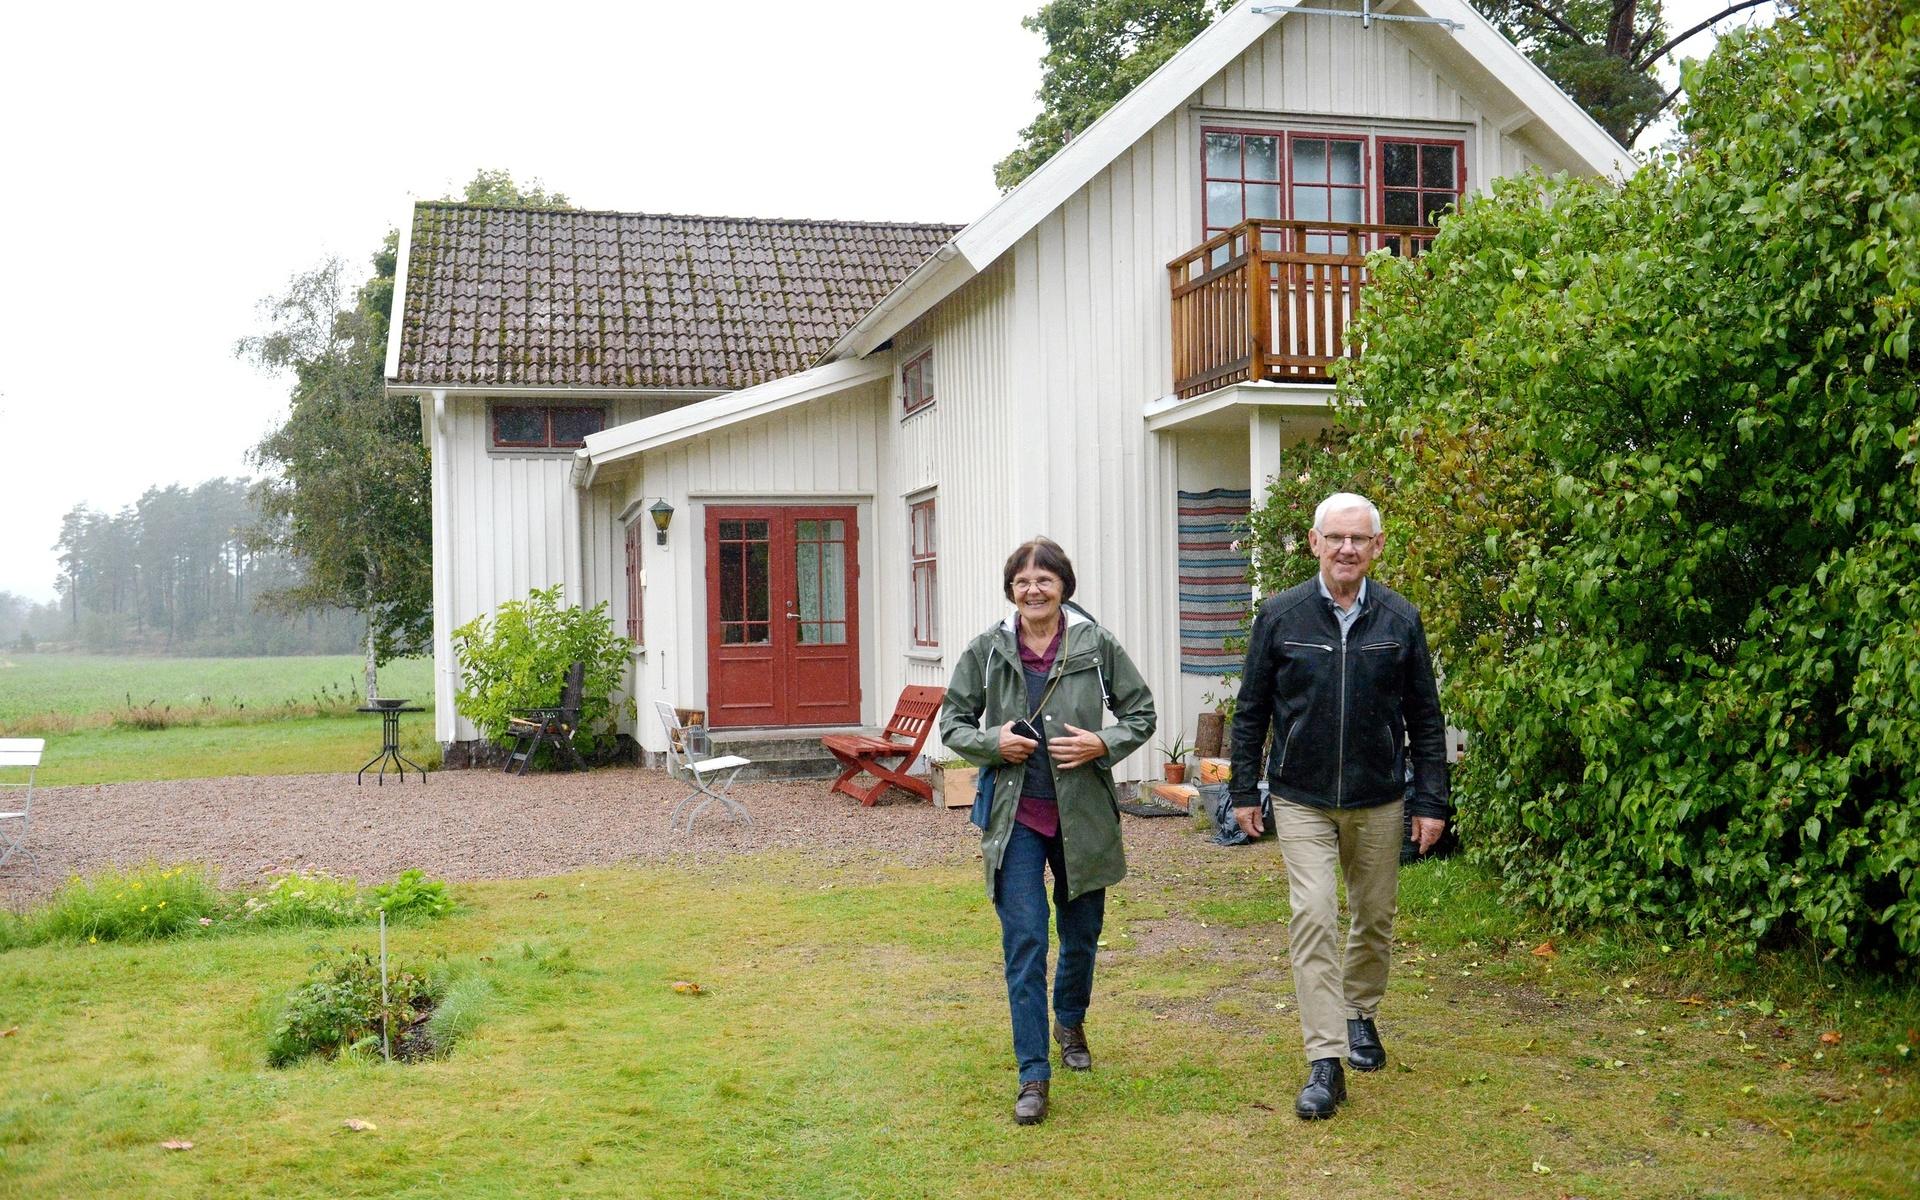 Monica och Morgan Svanängen bor i Jönköping men har kvar Lunnahult i Östadkulle som sommarhus. ”Why not?”, tänkte Morgan när Film i Väst ville hyra gården.